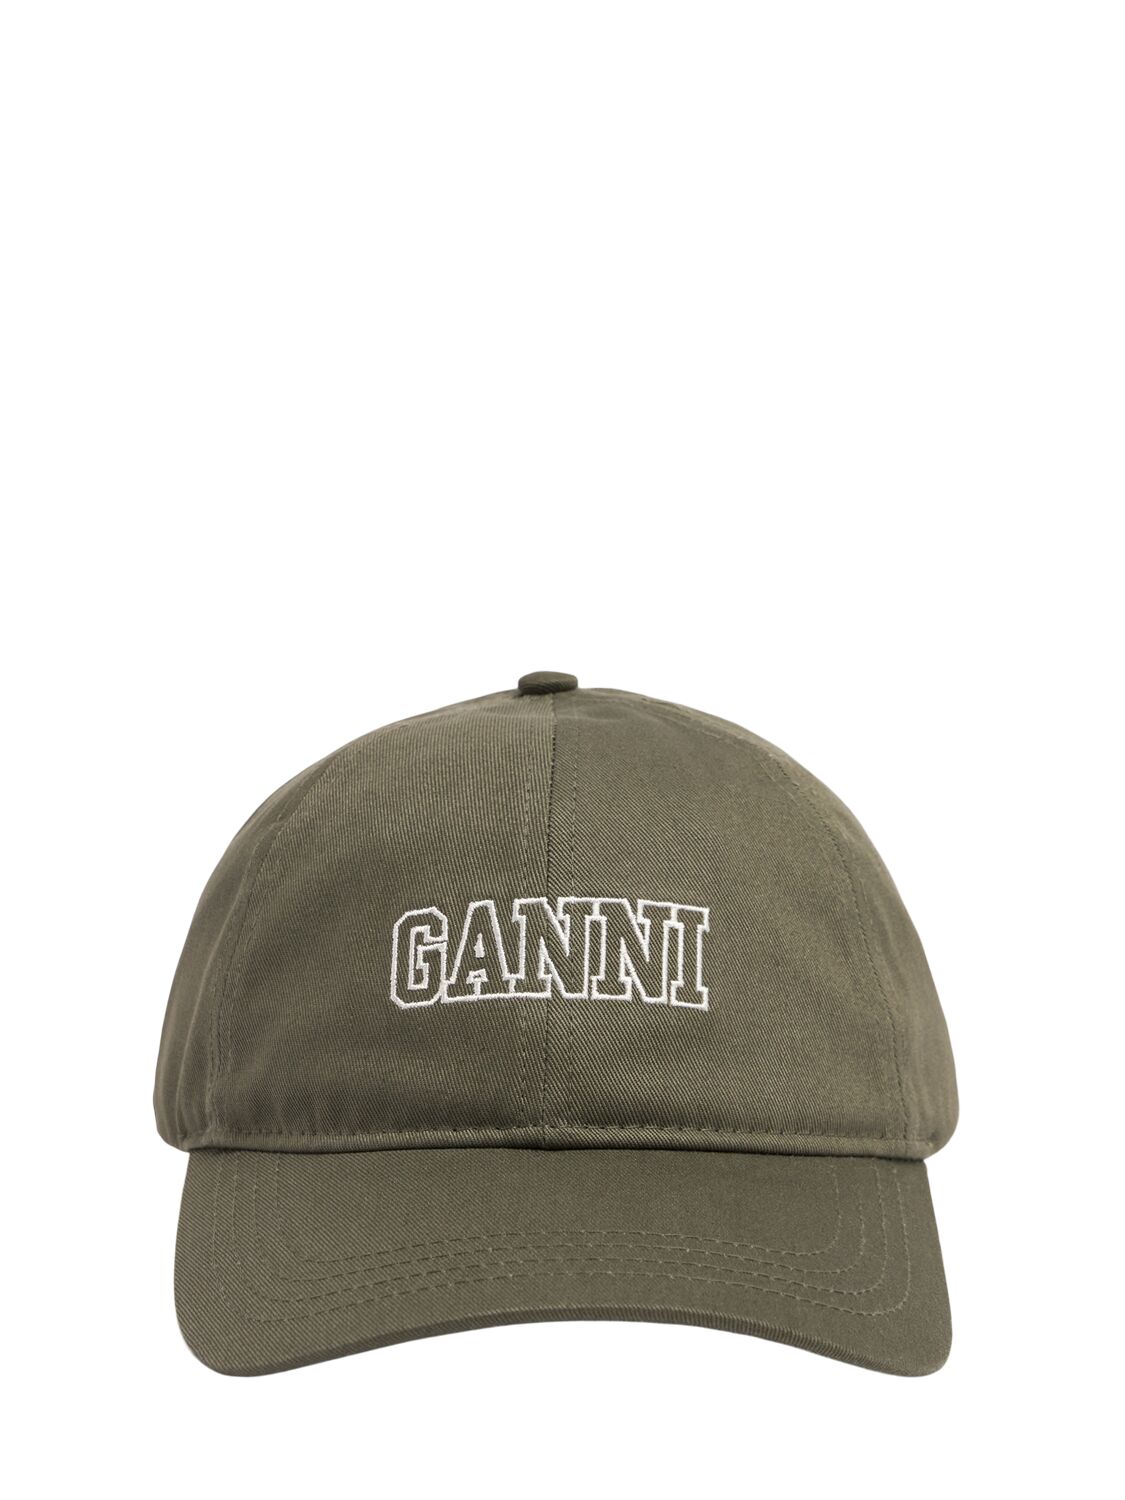 Kappe Aus Bio-baumwolle-Ganni 1